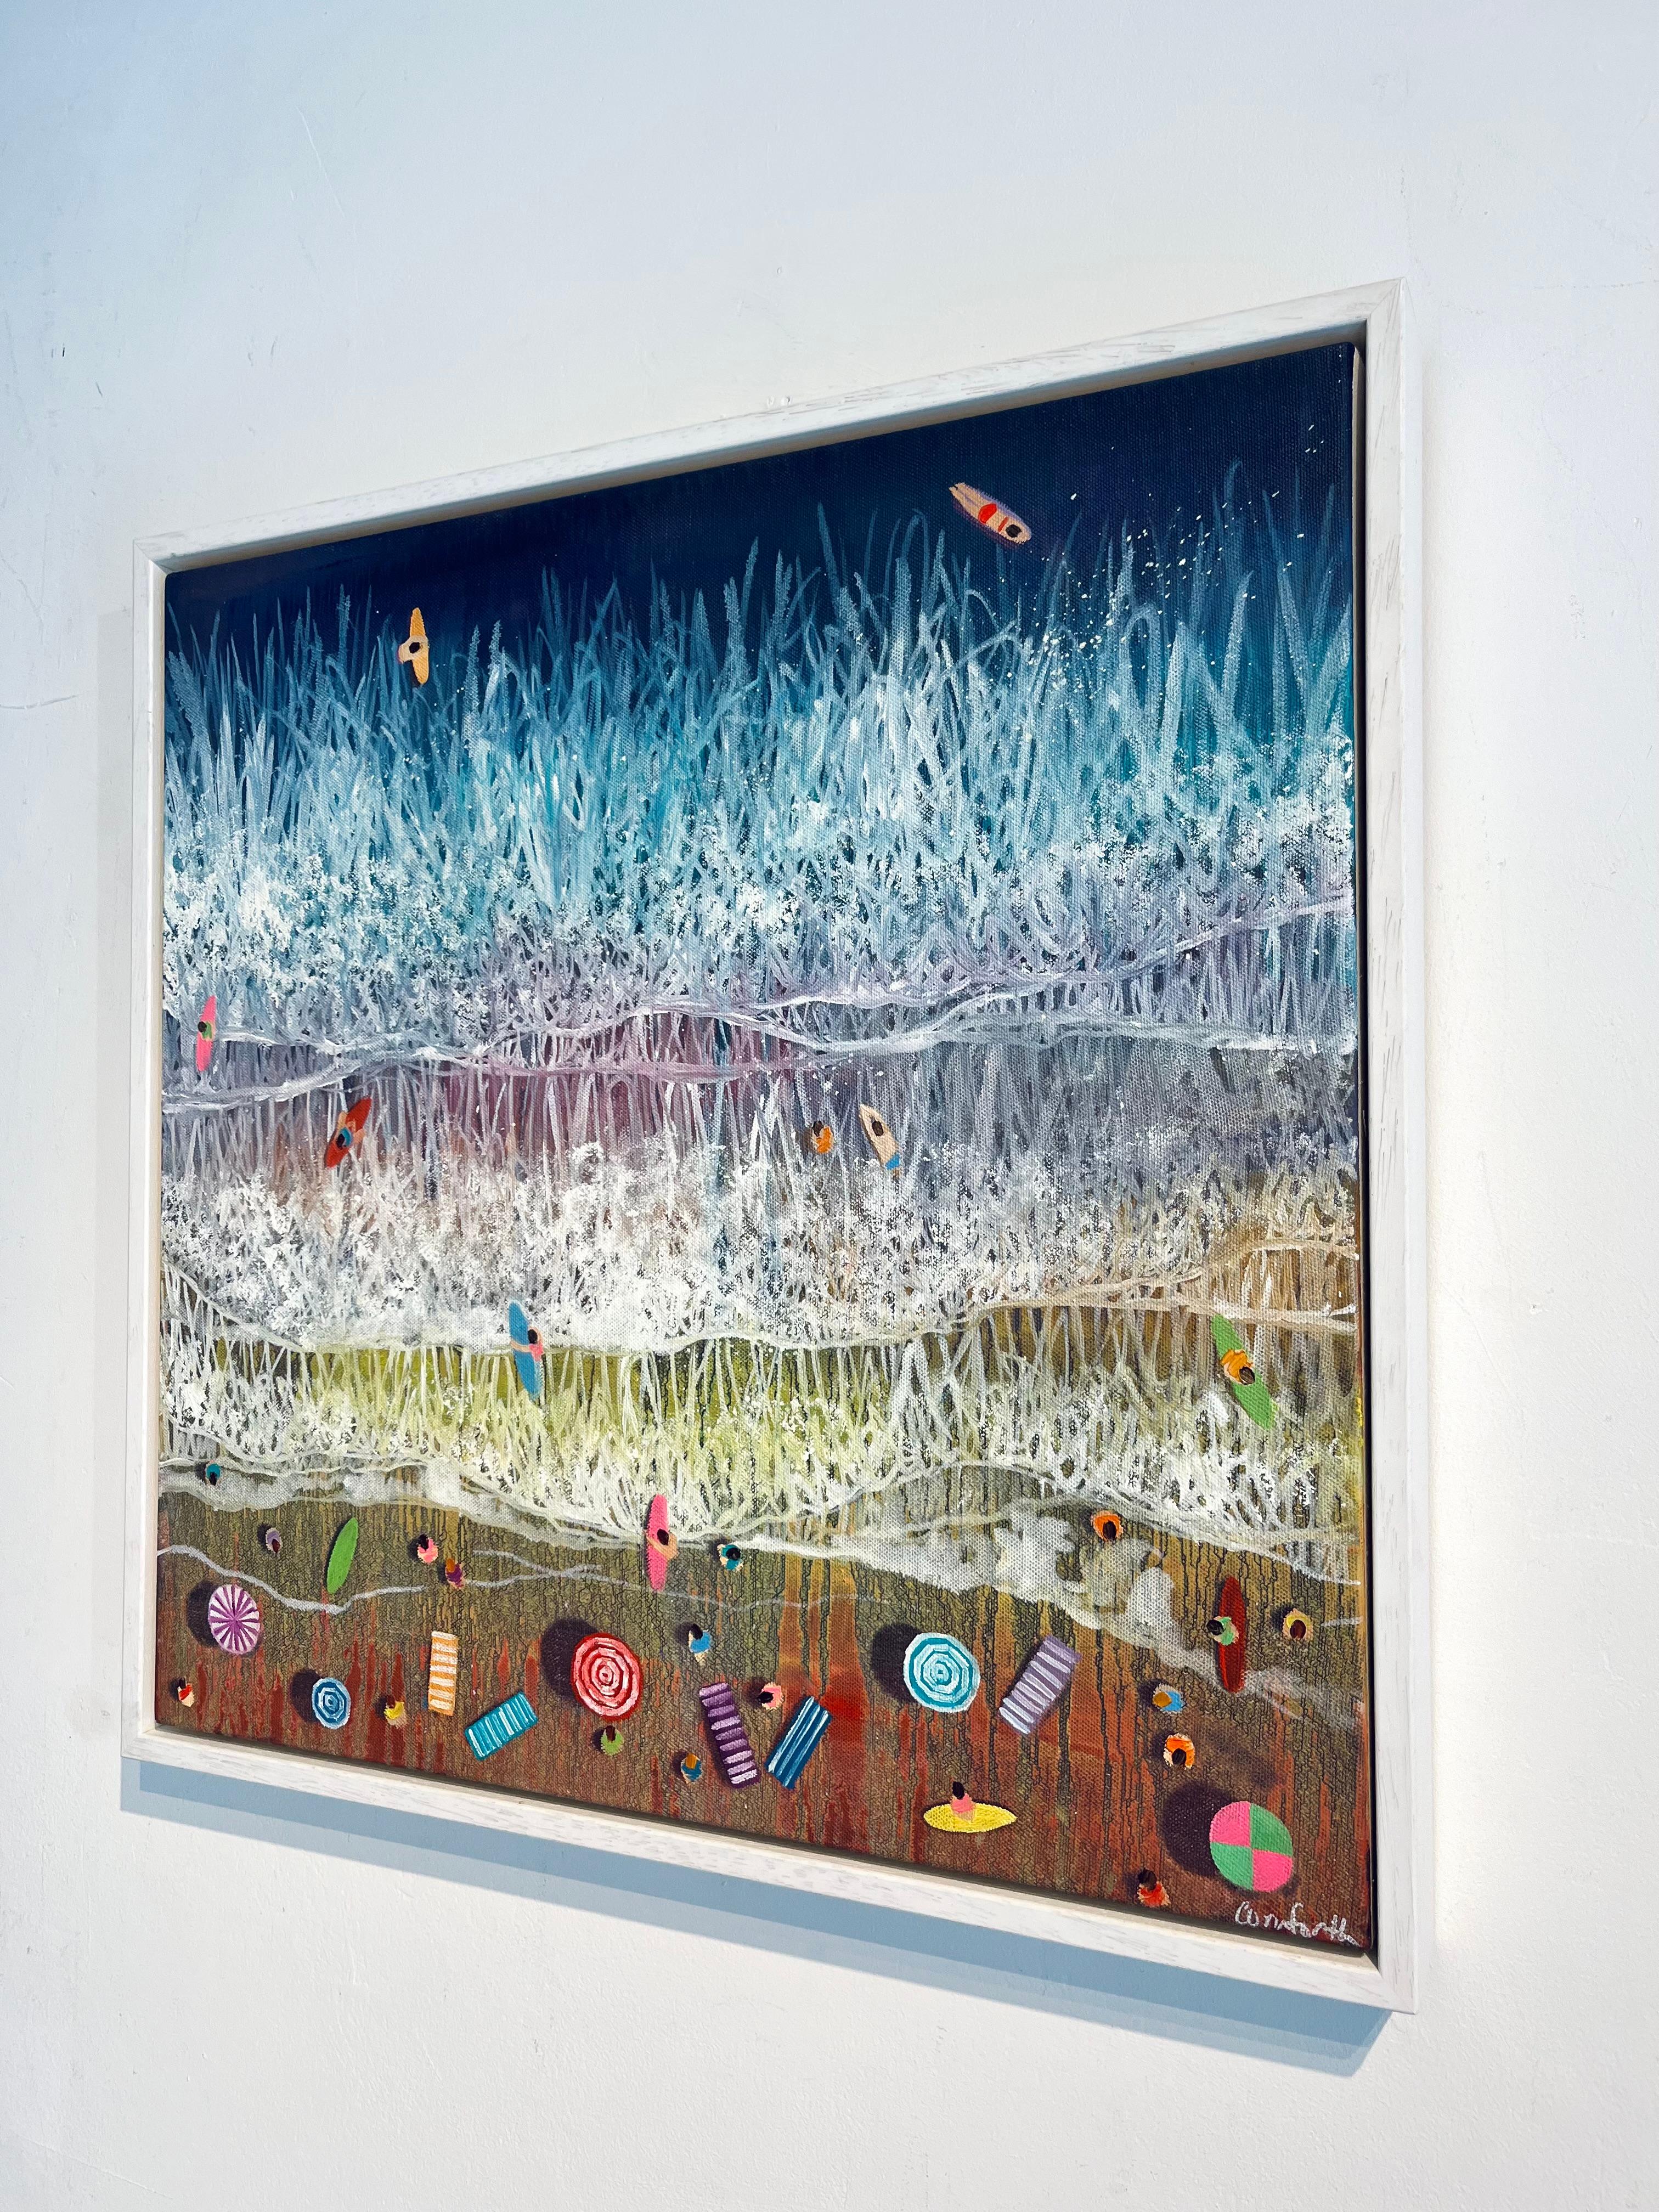 Dark Blue Waves-original impressionism seascape beach paintings-contemporary Art - Réalisme Painting par Lenny Cornforth